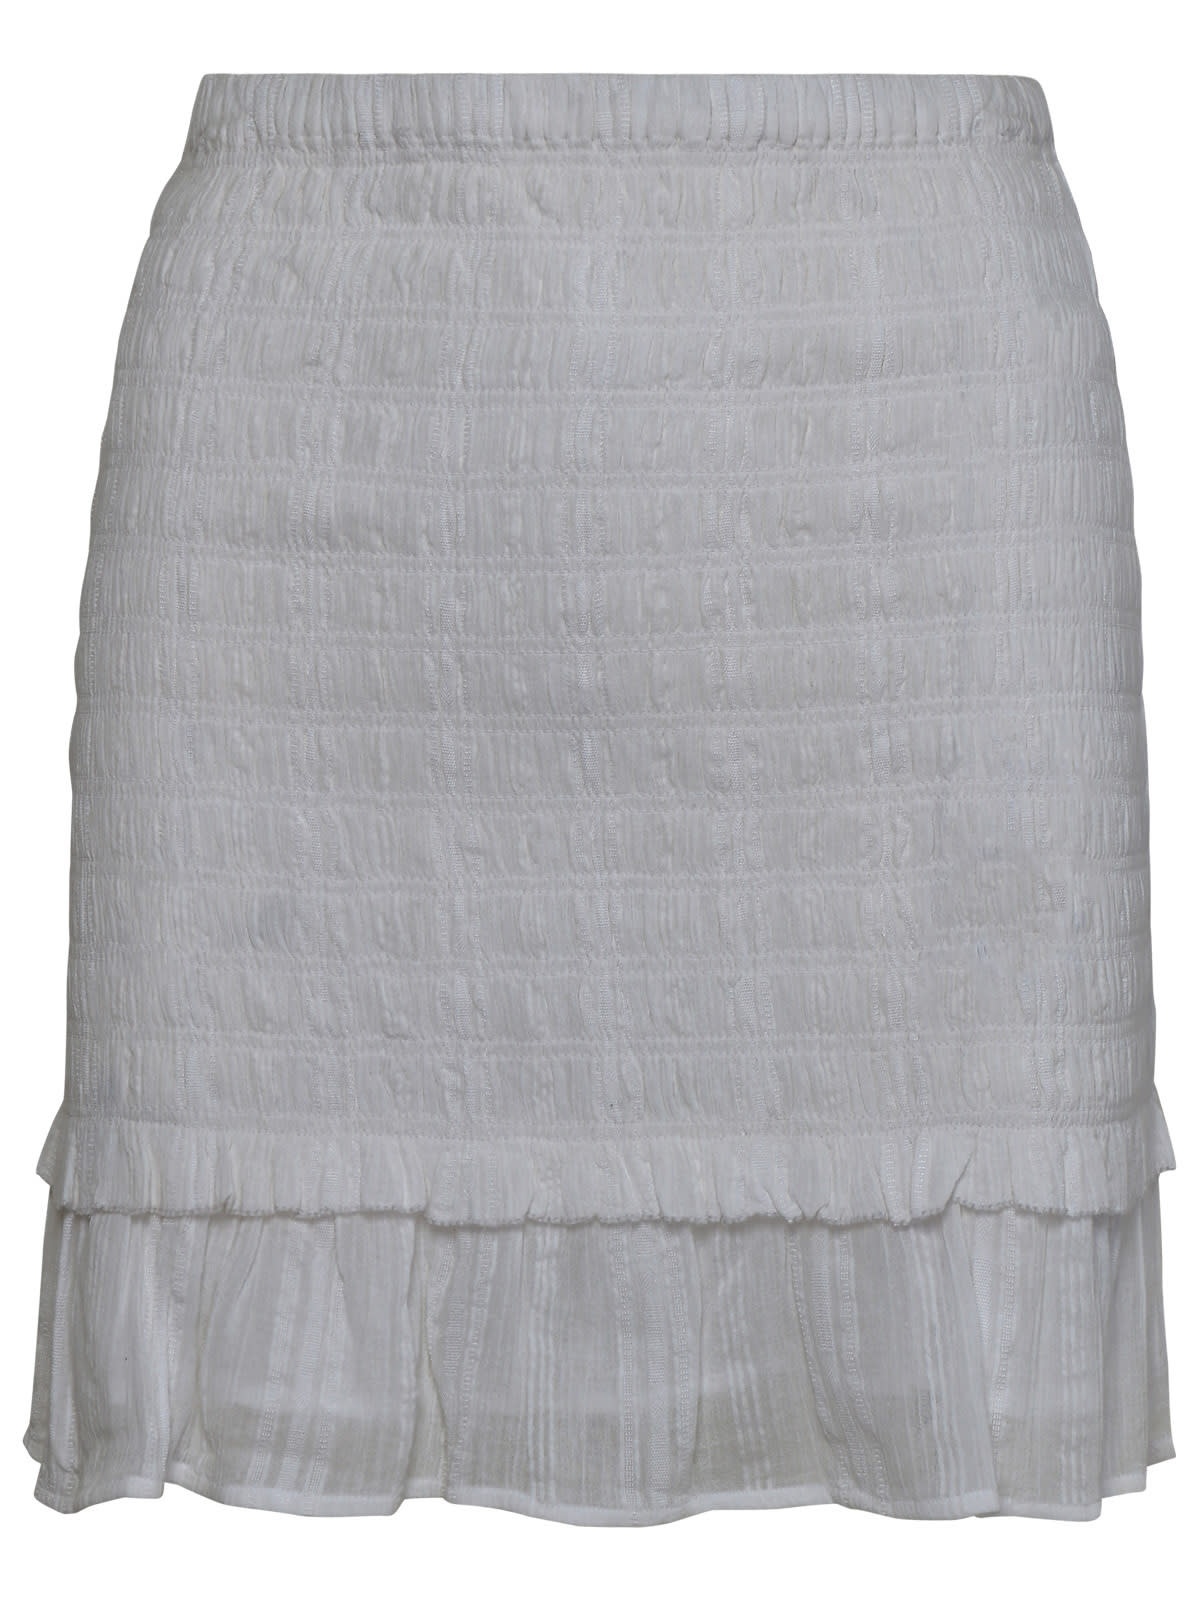 Shop Marant Etoile Dorela White Cotton Miniskirt